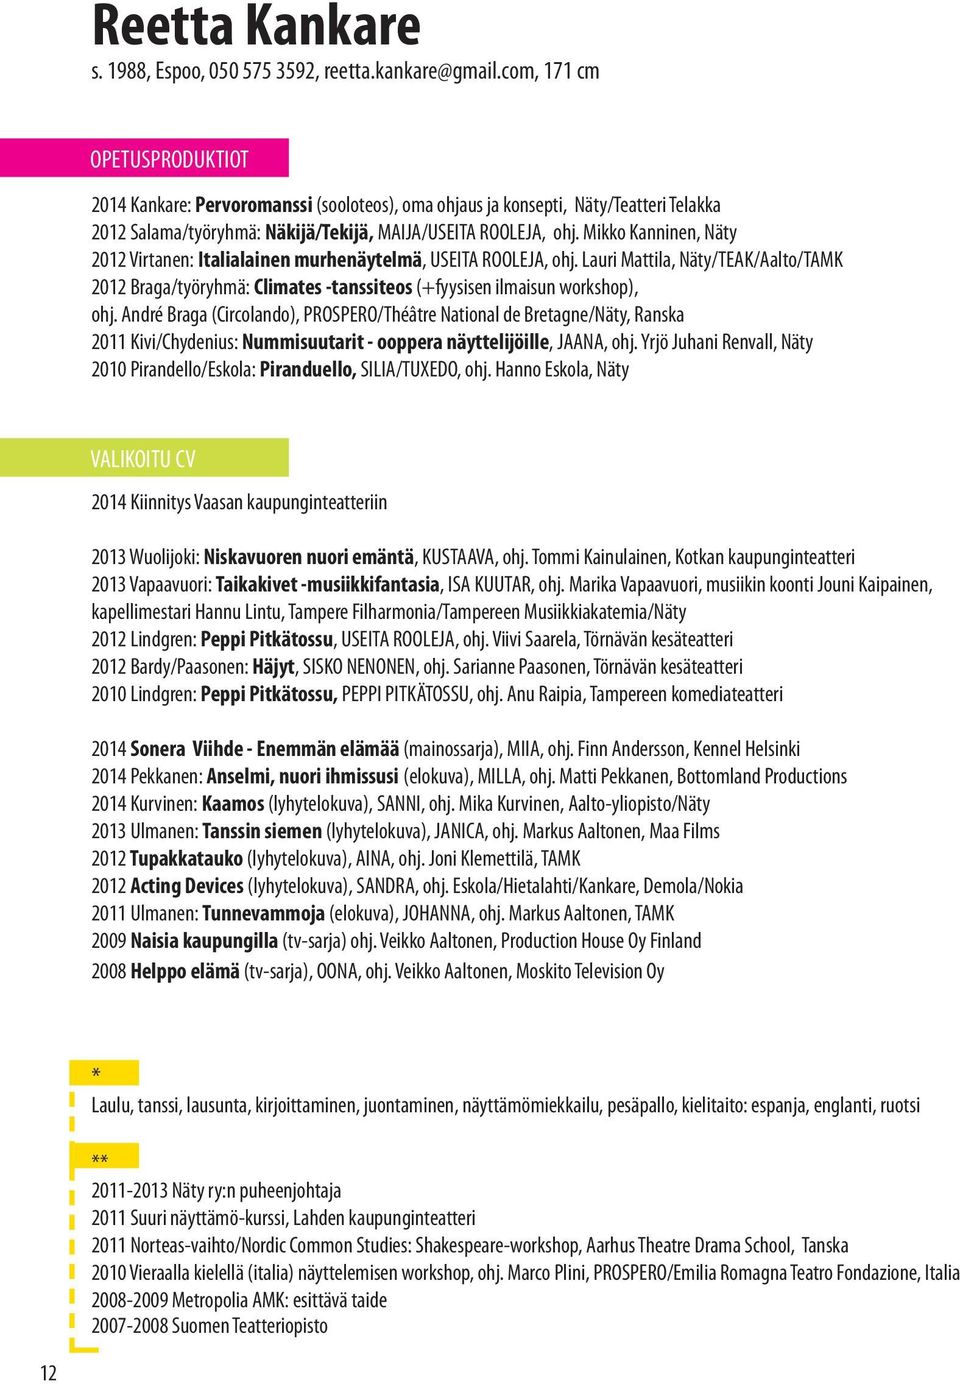 Mikko Kanninen, Näty 2012 Virtanen: Italialainen murhenäytelmä, USEITA ROOLEJA, ohj. Lauri Mattila, Näty/TEAK/Aalto/TAMK 2012 Braga/työryhmä: Climates -tanssiteos (+fyysisen ilmaisun workshop), ohj.